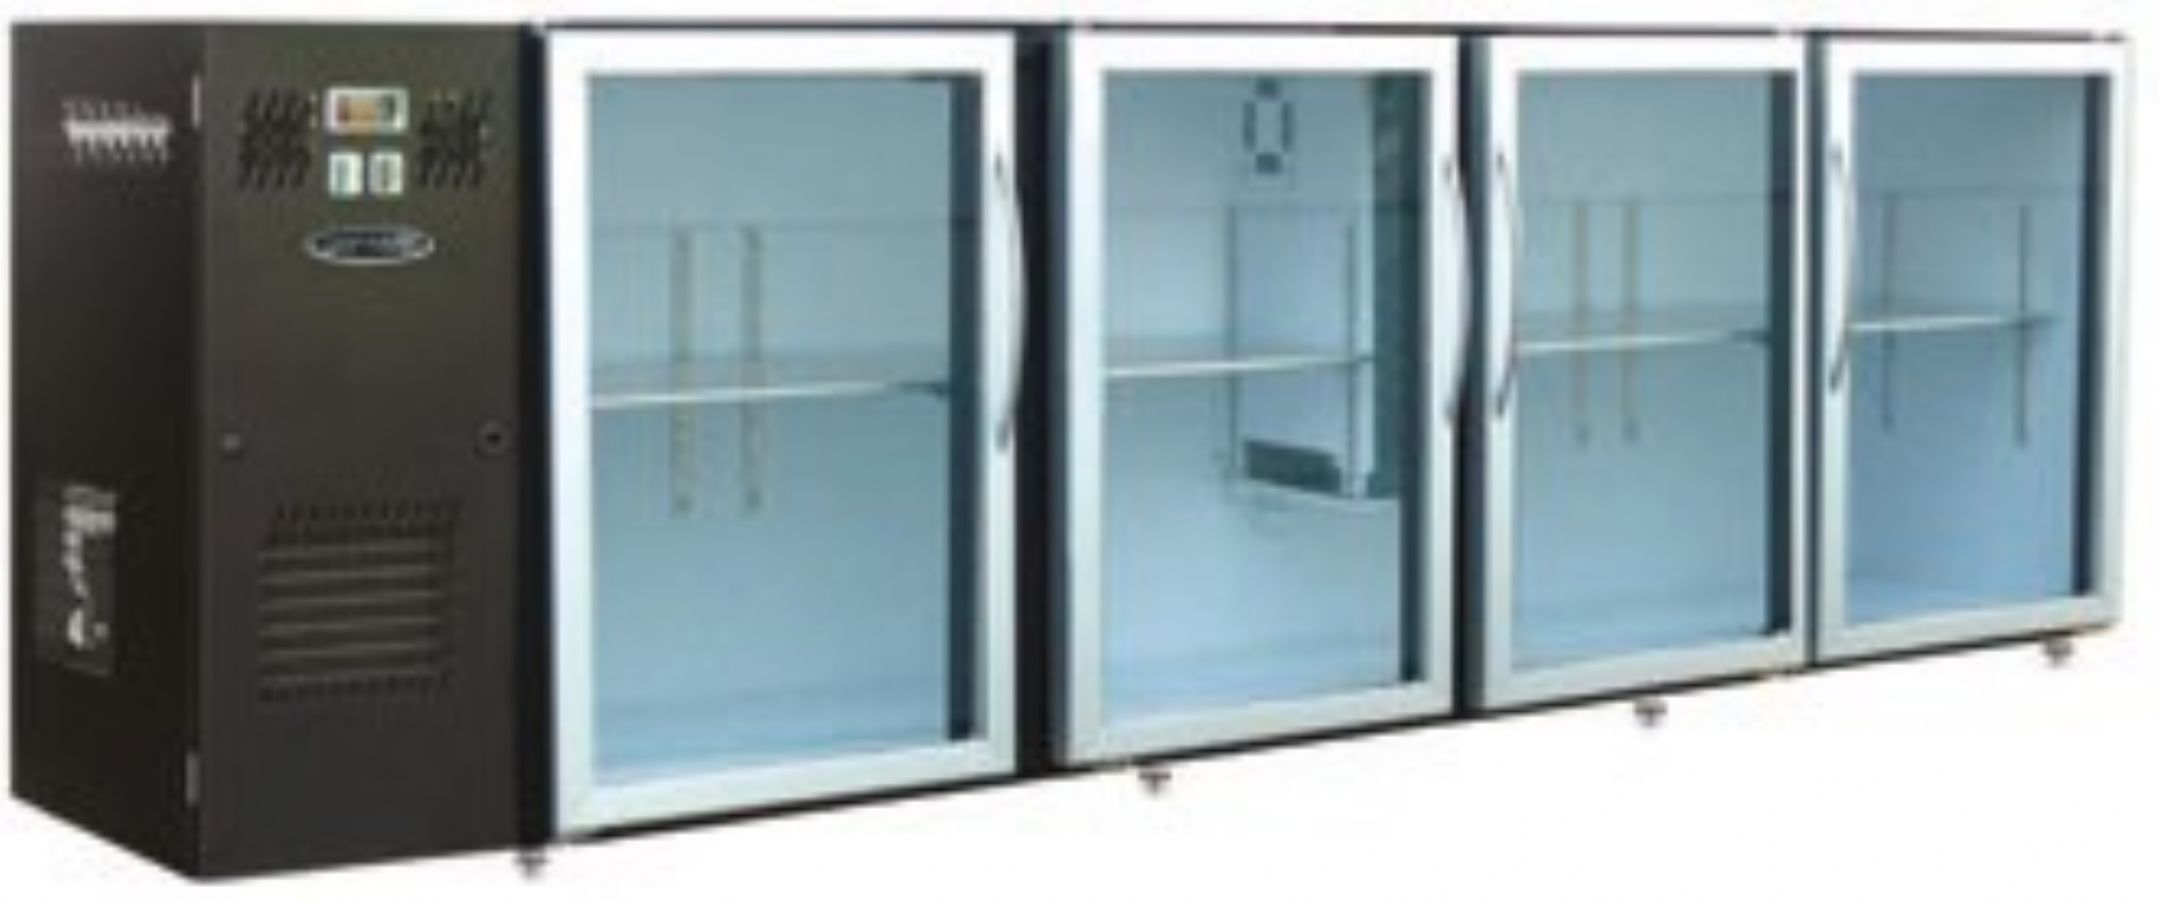 Arrire-bar Skinplate - Srie LEDS - Groupe log - 4 larges portes vitres - 967 litres - U74LVS